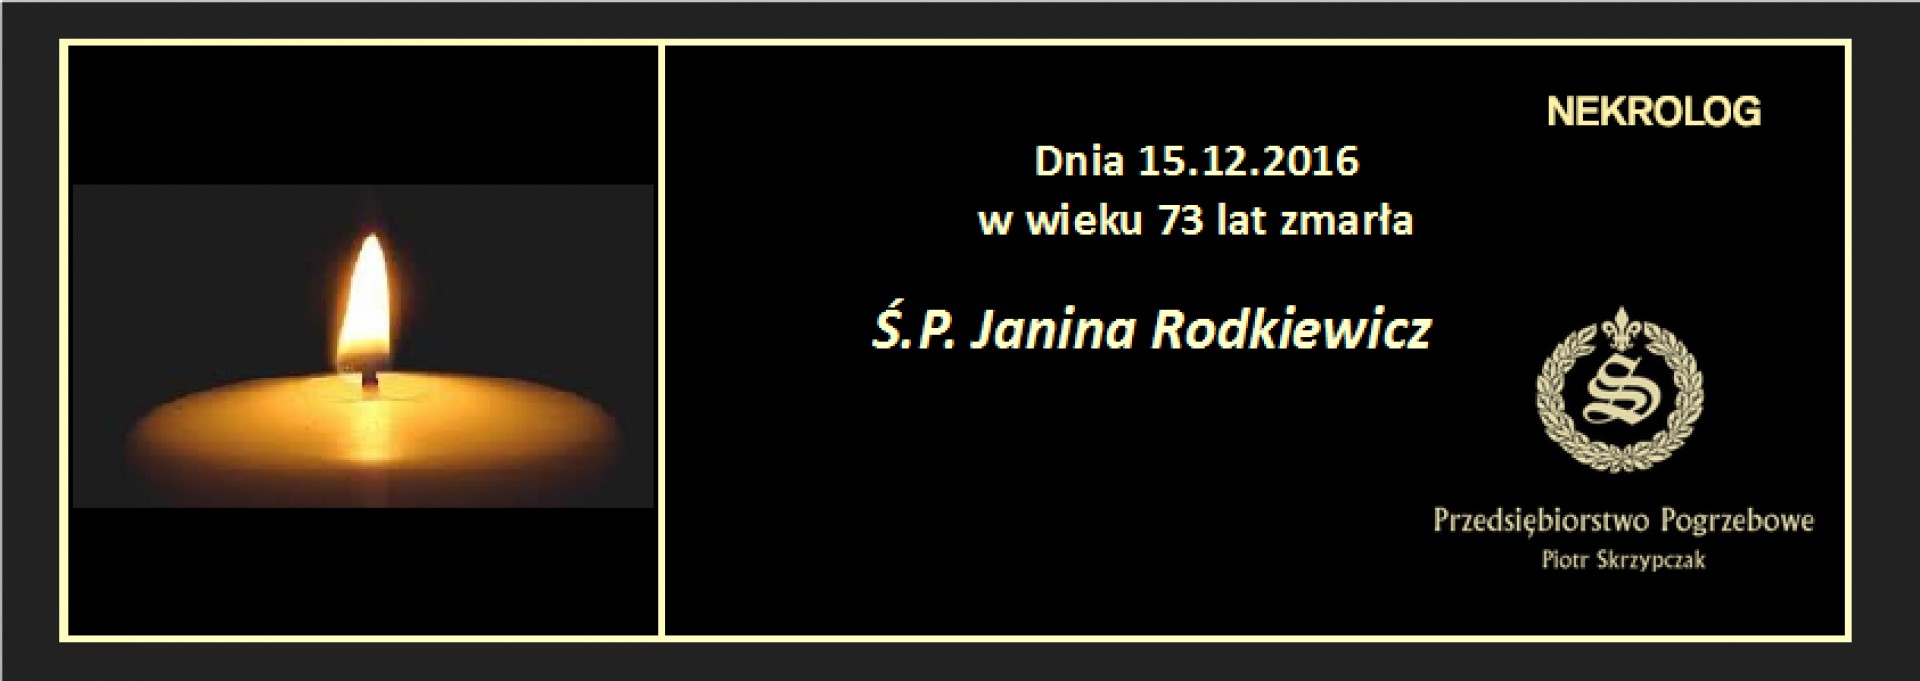 Ś.P. Janina Rodkiewicz